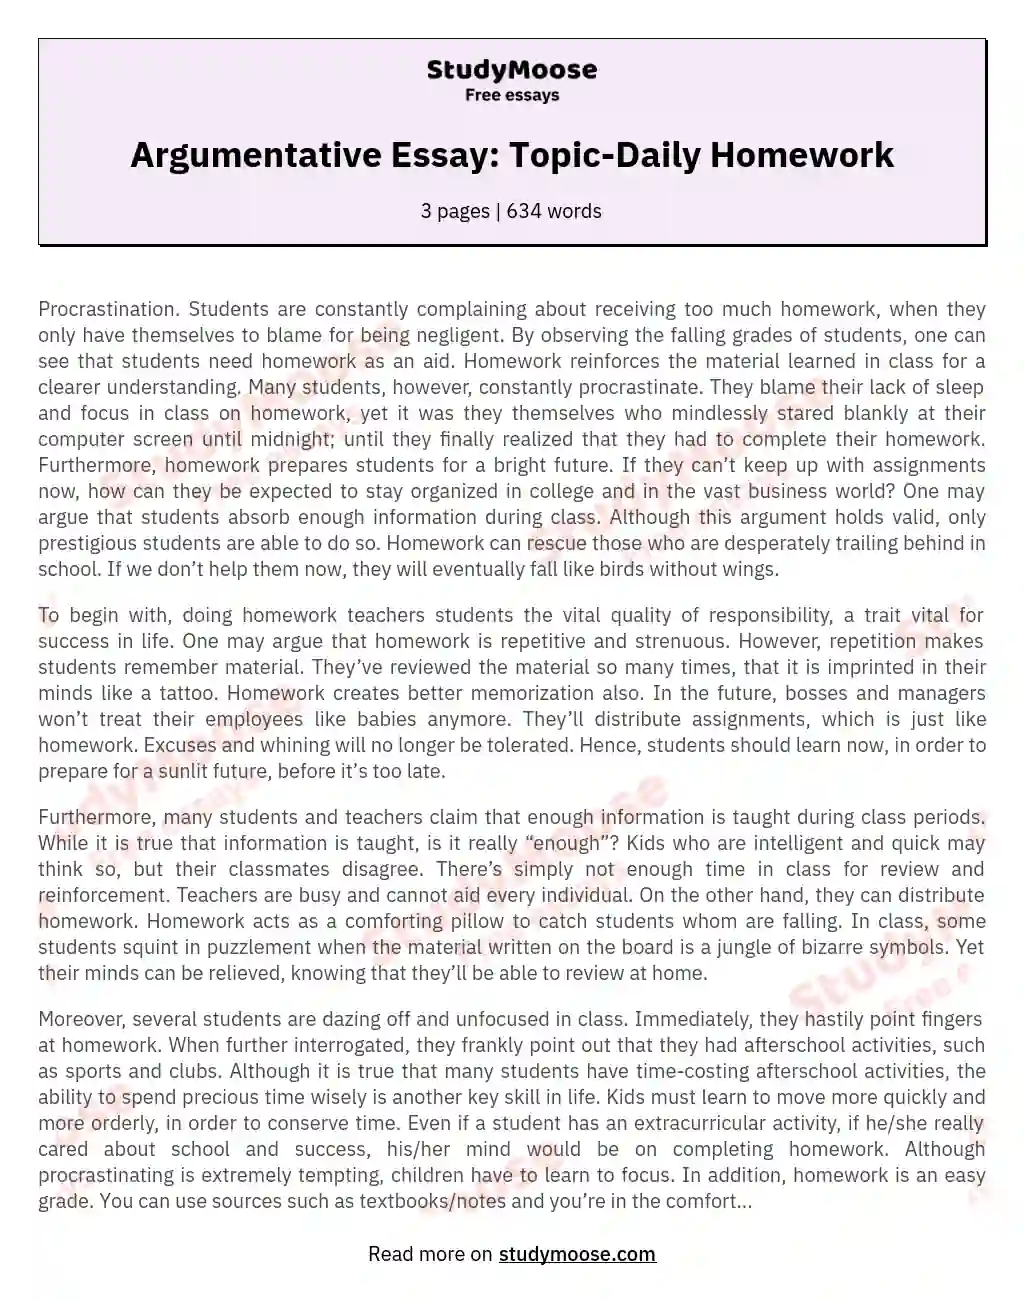 Argumentative Essay: Topic-Daily Homework essay